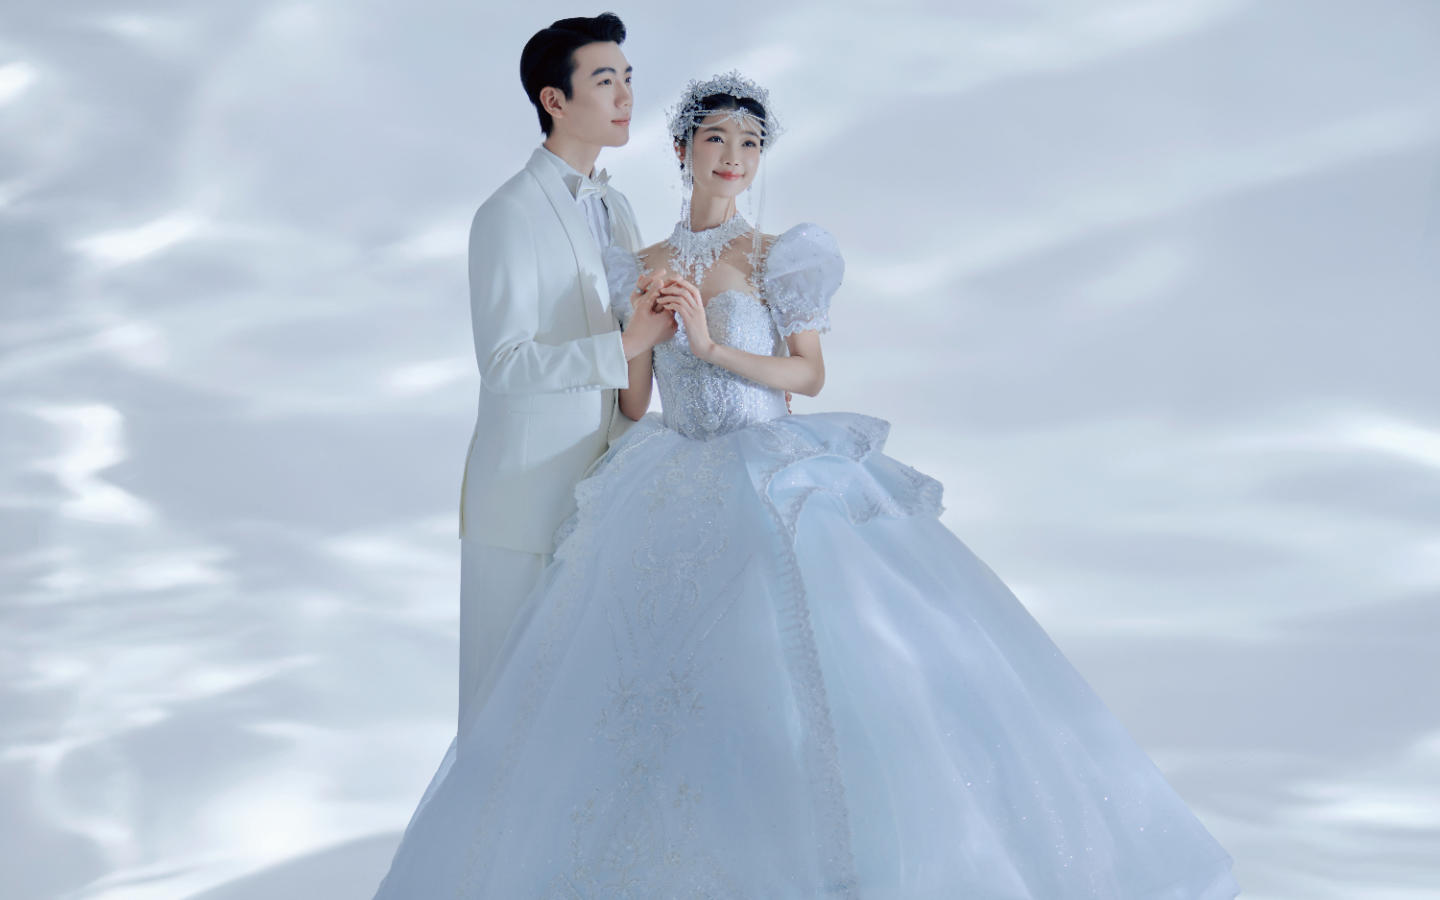 闪耀的冰蓝色光影婚纱照😭真的美哭了